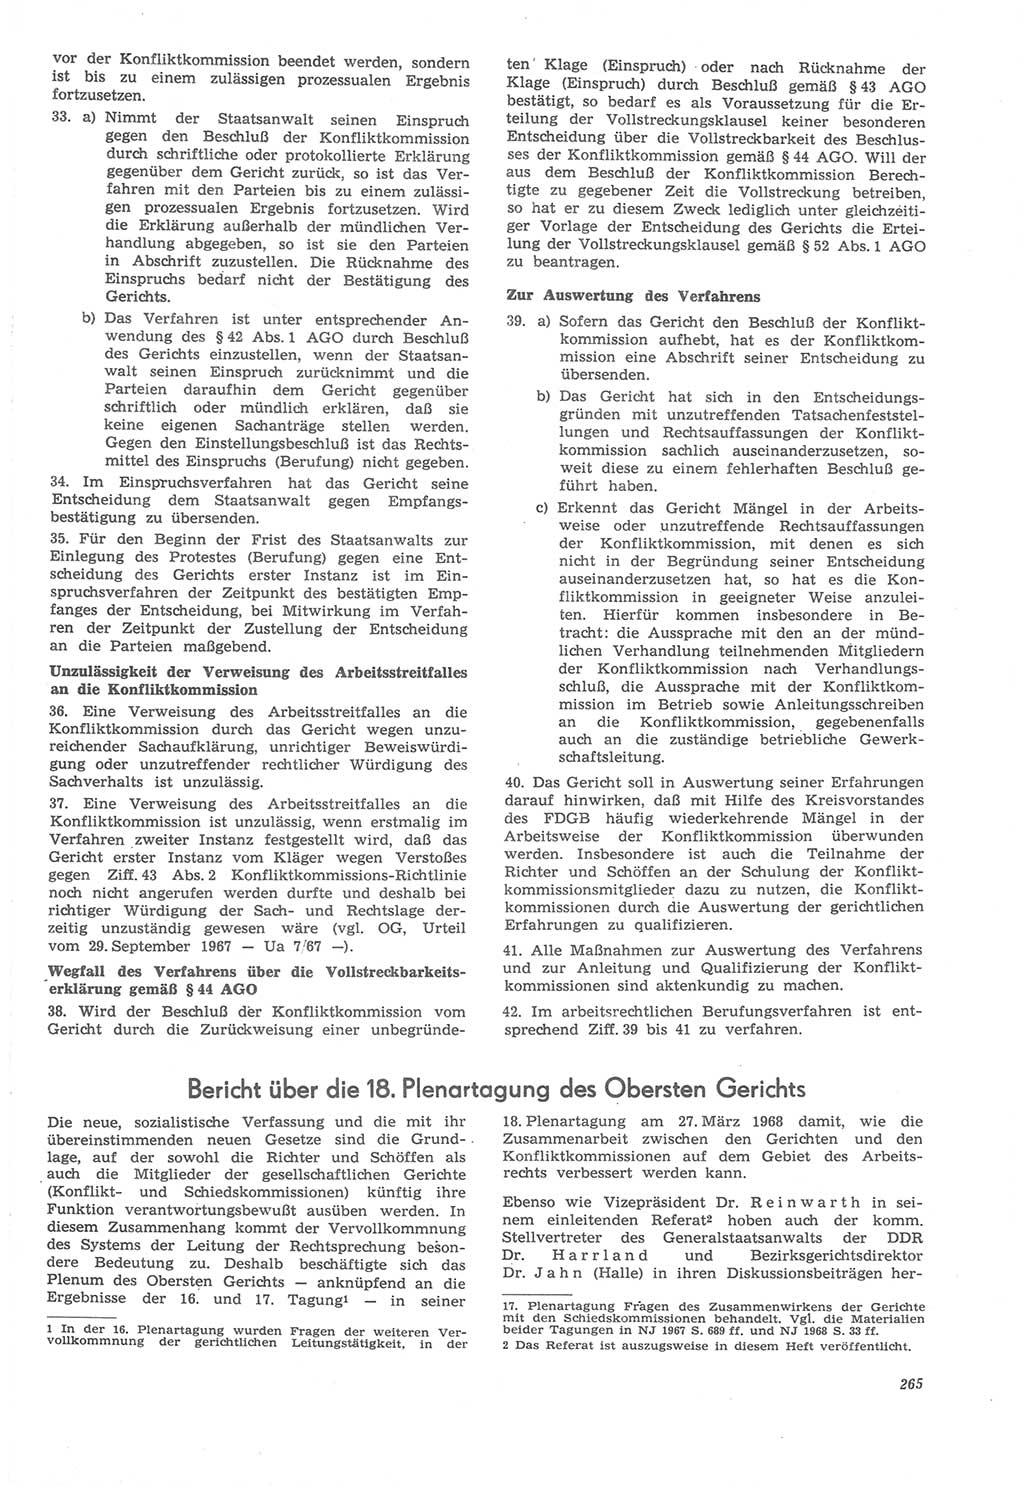 Neue Justiz (NJ), Zeitschrift für Recht und Rechtswissenschaft [Deutsche Demokratische Republik (DDR)], 22. Jahrgang 1968, Seite 265 (NJ DDR 1968, S. 265)